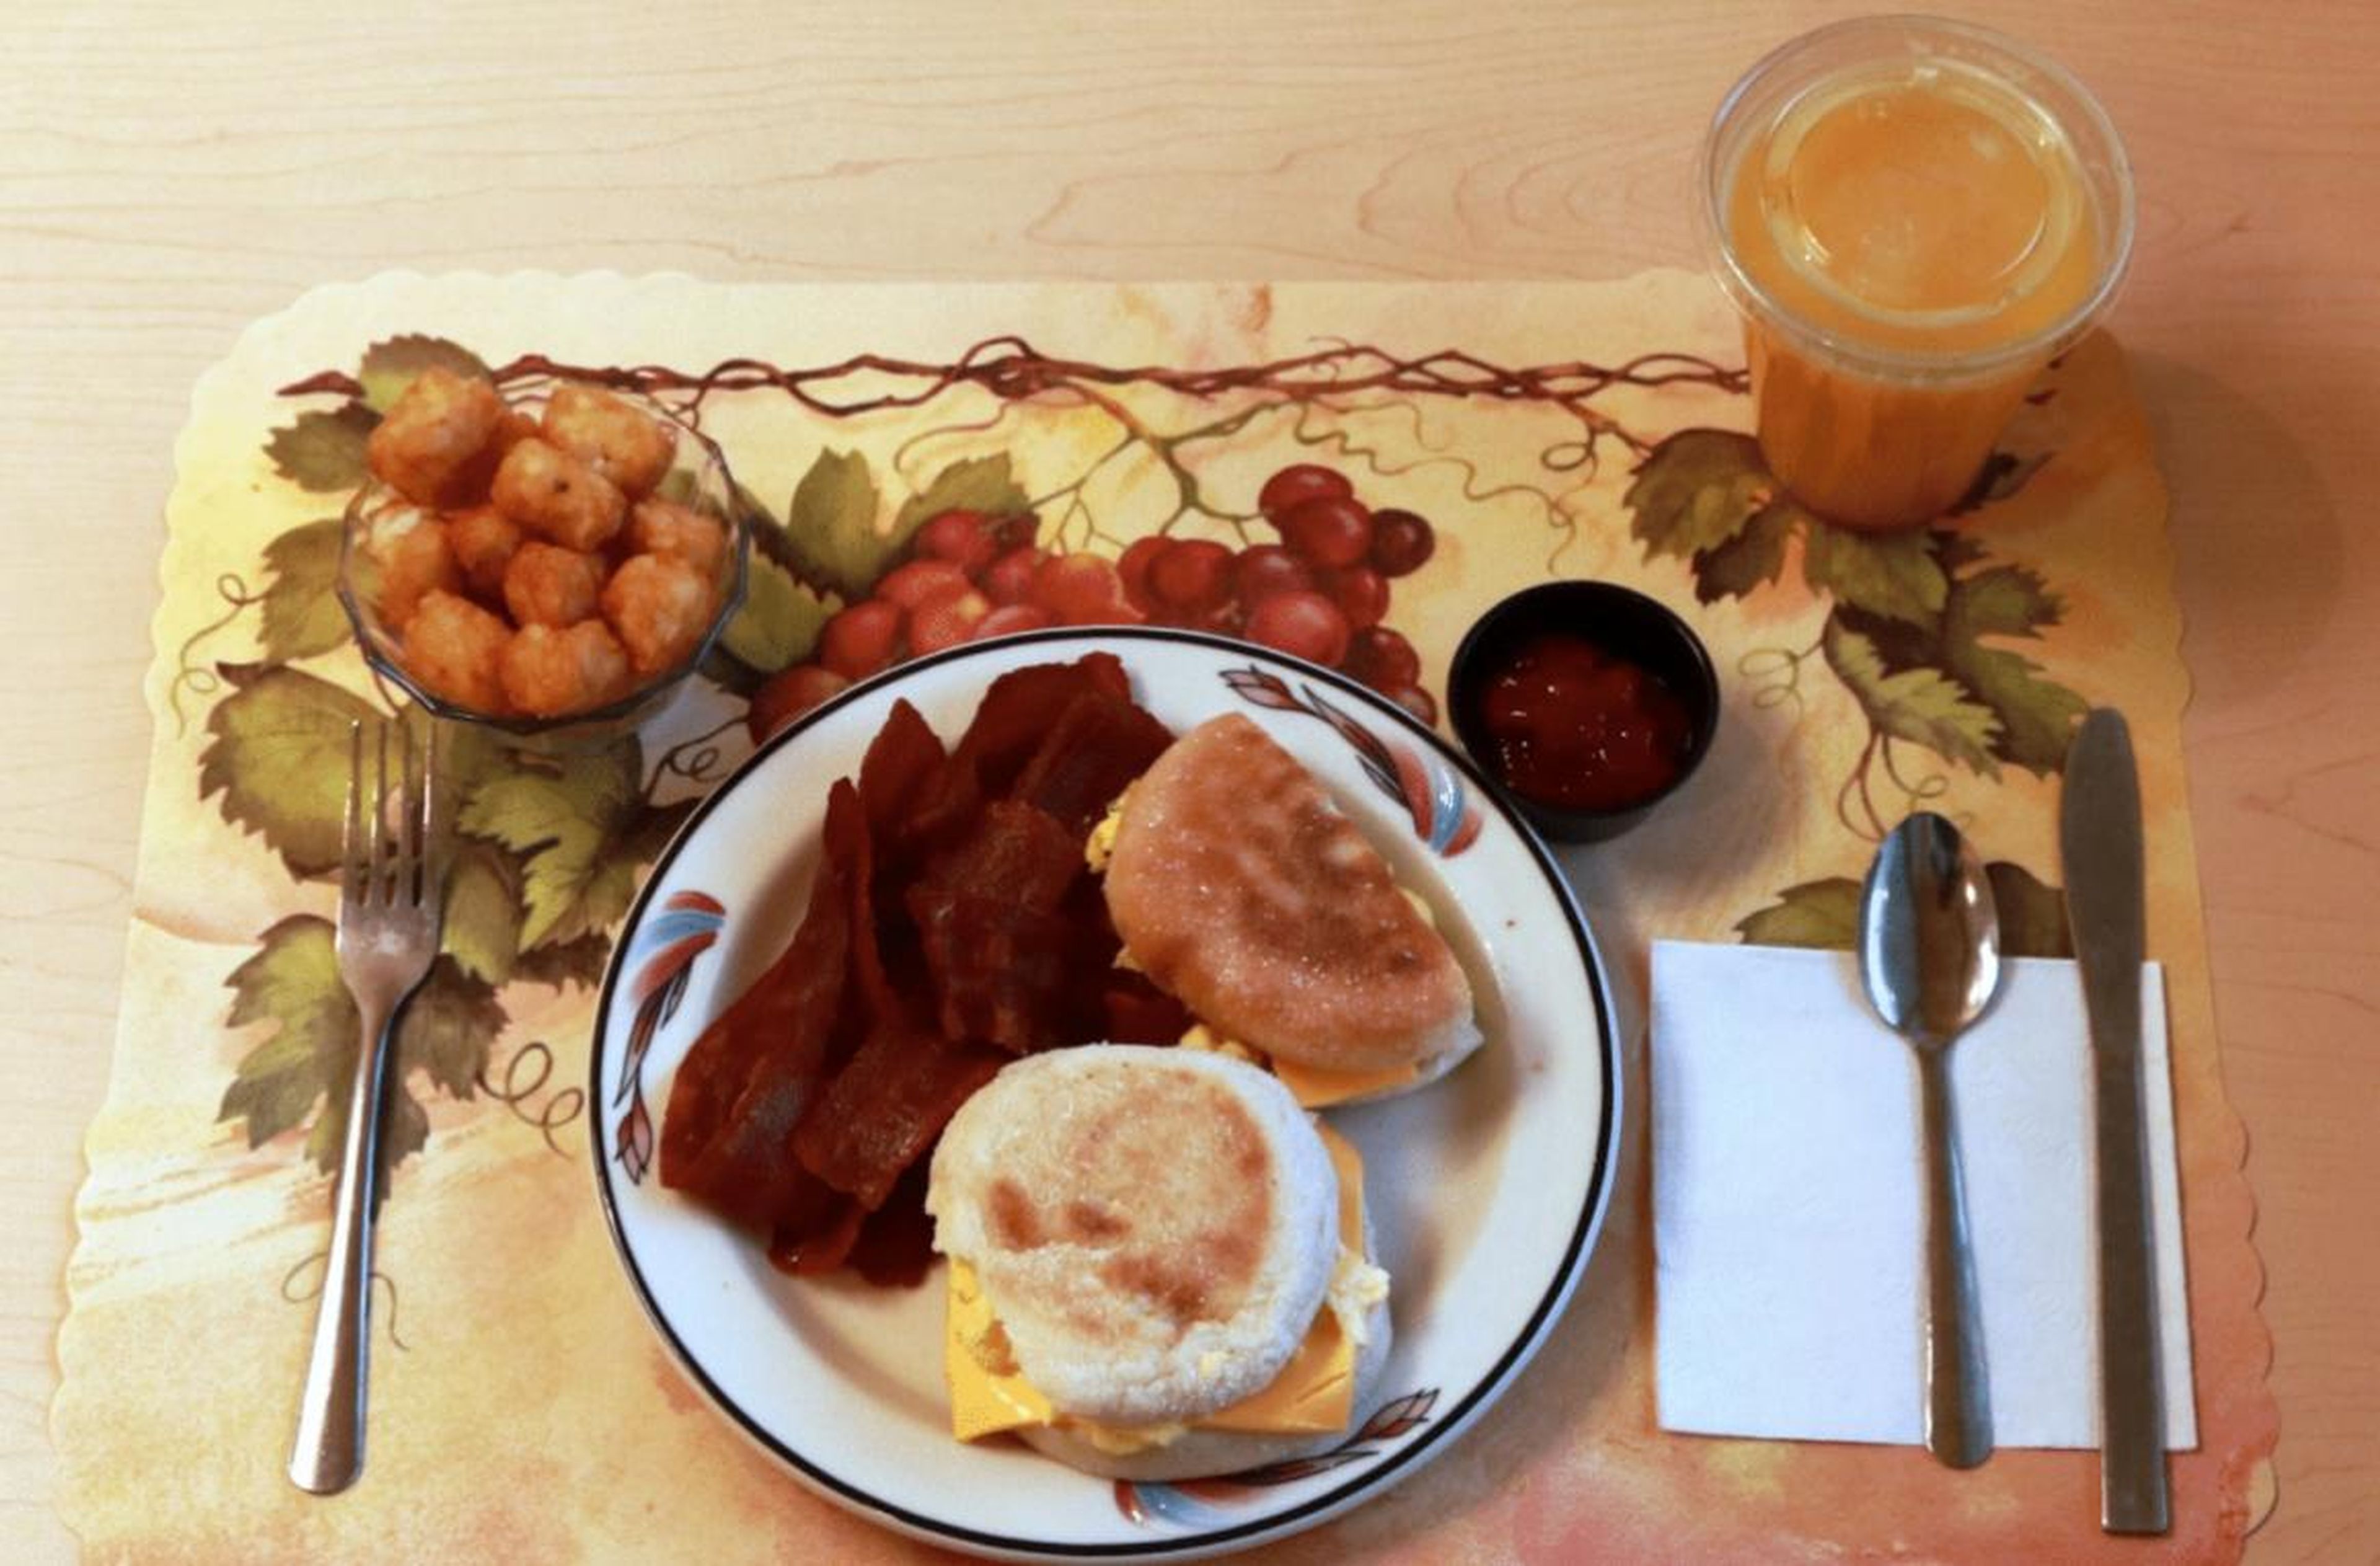 Este desayuno procesado incluye huevo, tocino de pavo y queso americano en un muffin inglés con pan tostado y ketchup. El zumo de naranja fue suplementado con fibra.